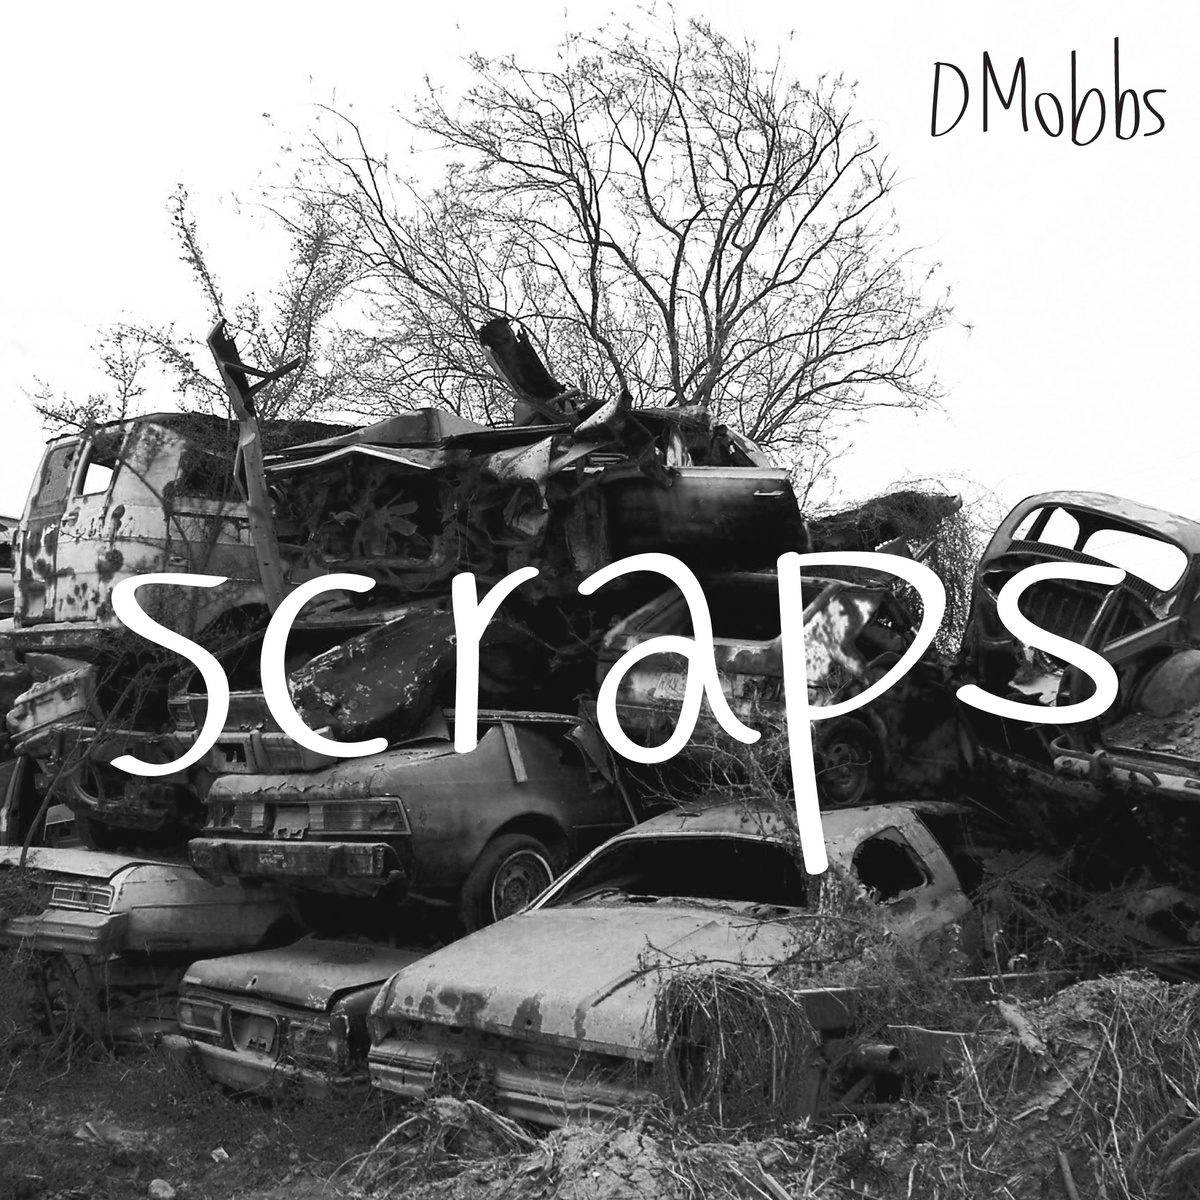 DMobbs "Scraps" Release | @dmobbs1